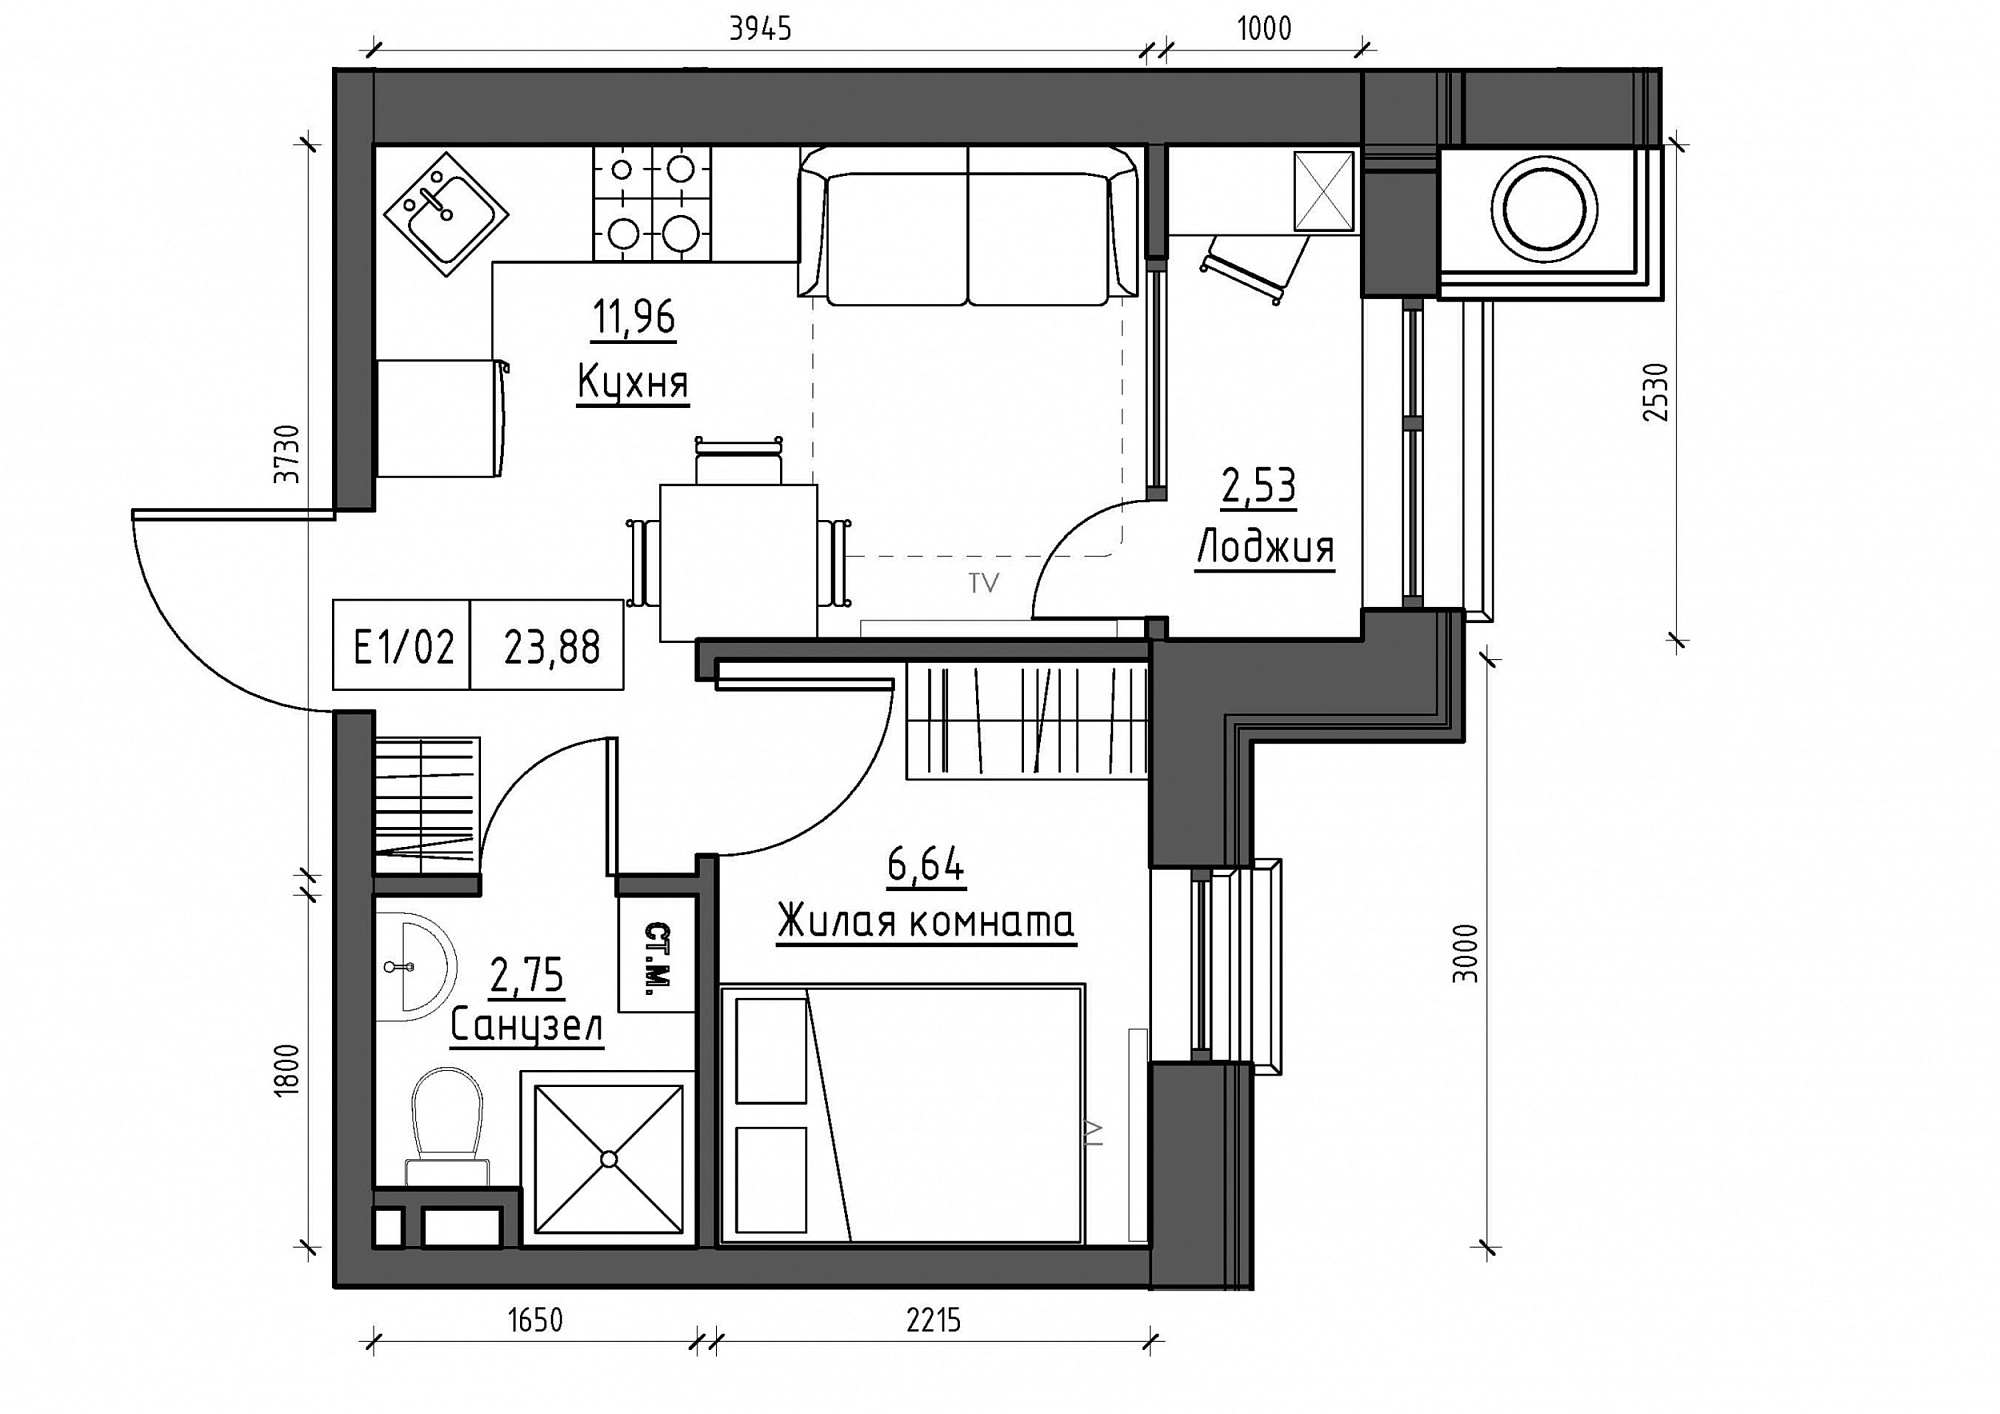 Планировка 1-к квартира площей 23.88м2, KS-012-03/0015.